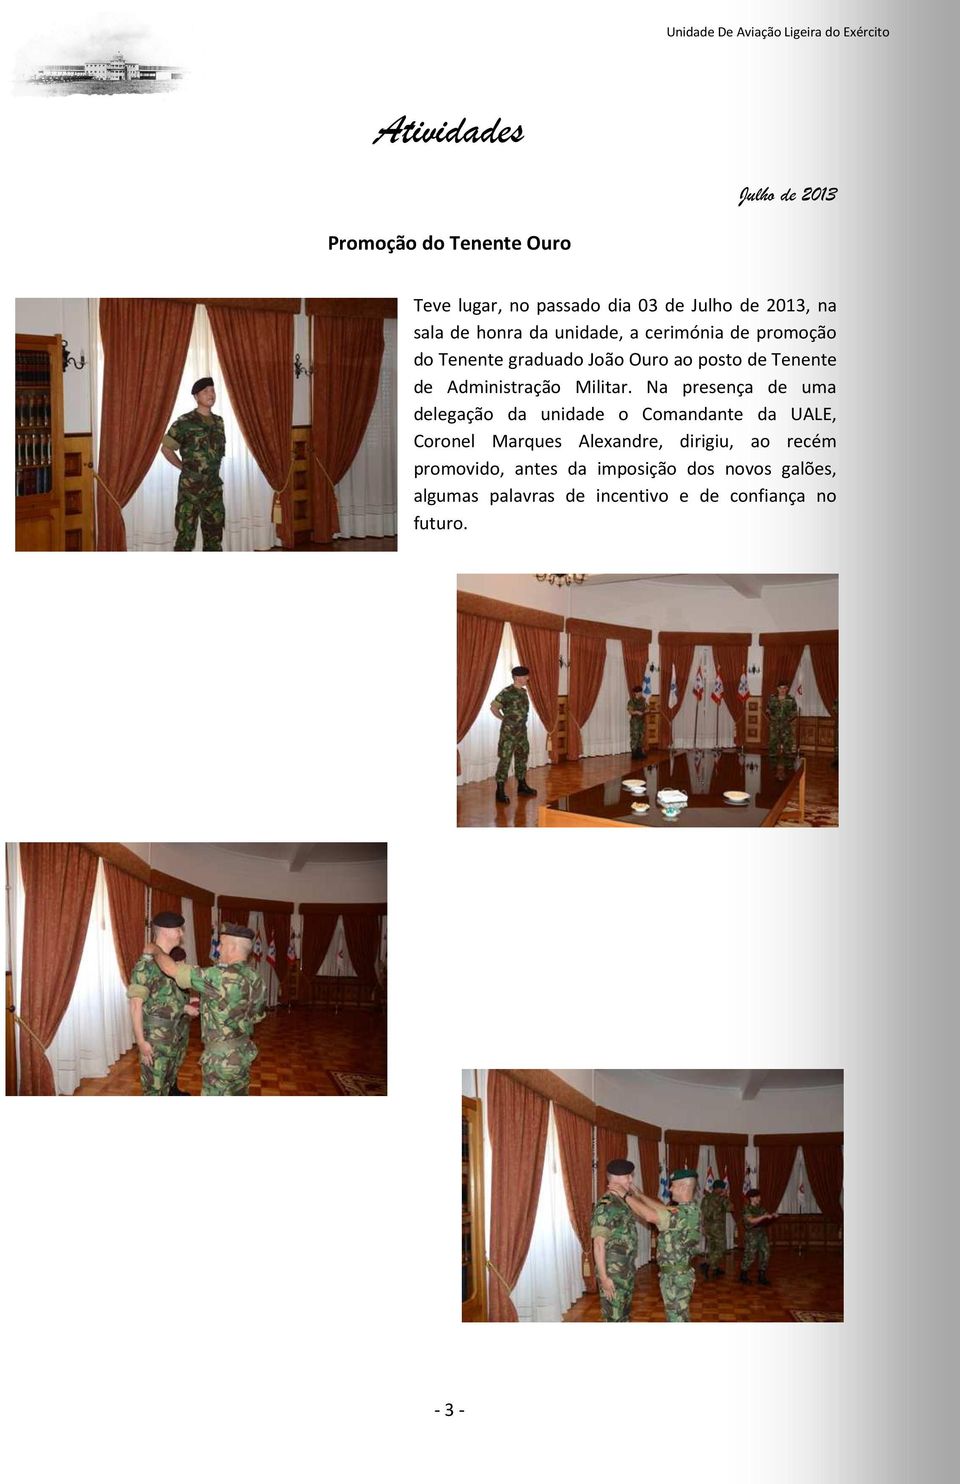 Na presença de uma delegação da unidade o Comandante da UALE, Coronel Marques Alexandre, dirigiu, ao recém